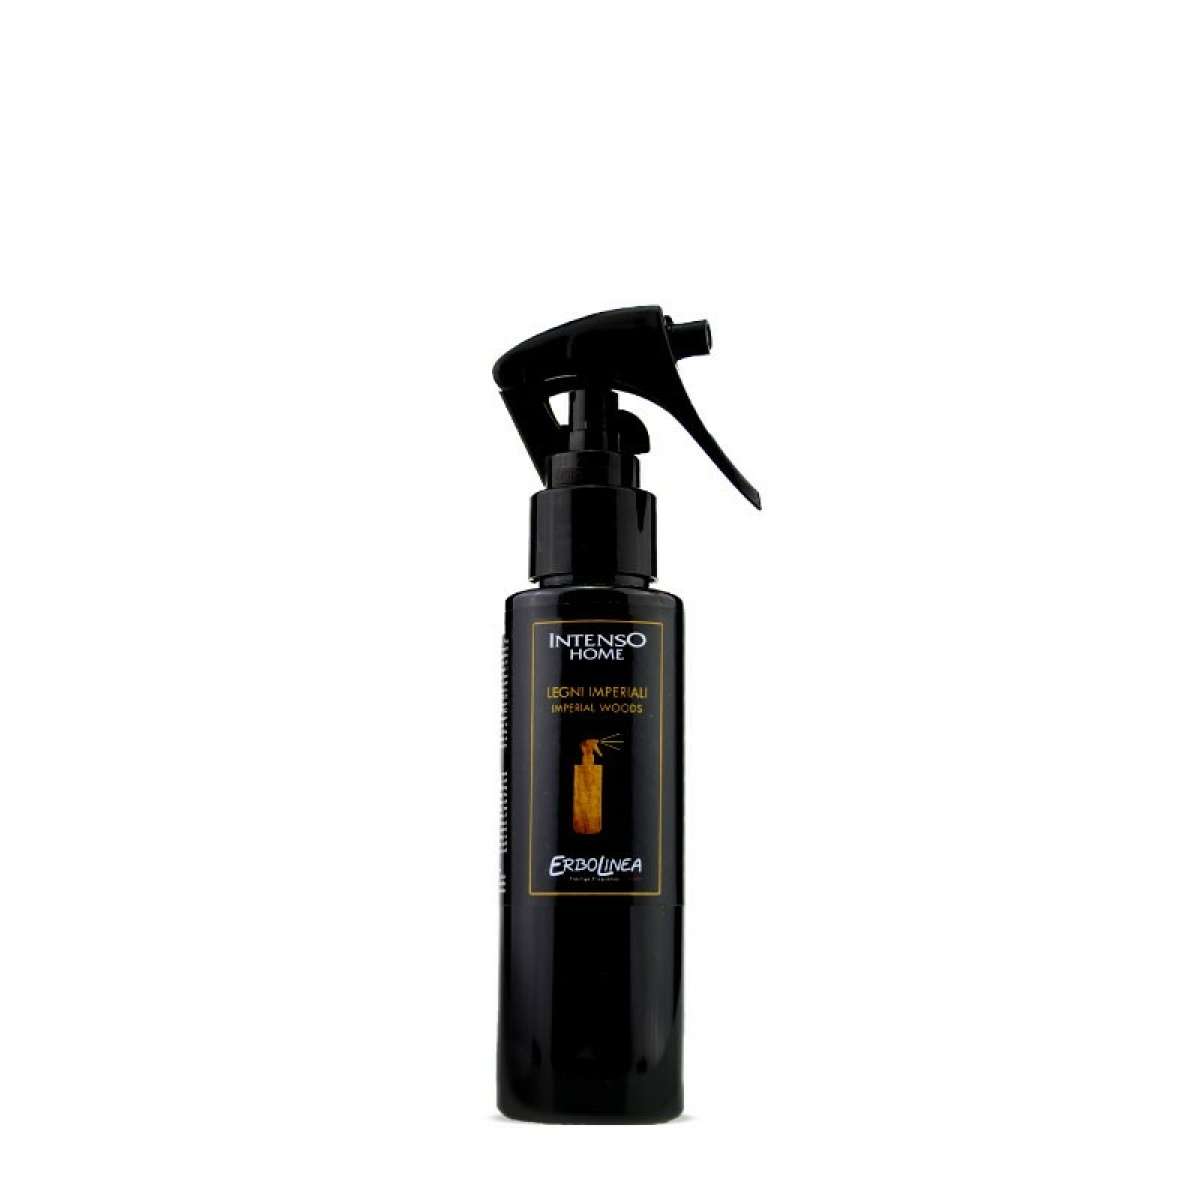 Immagine del prodotto Home Spray per Ambiente Legni Imperiali 100 ml | Erbolinea